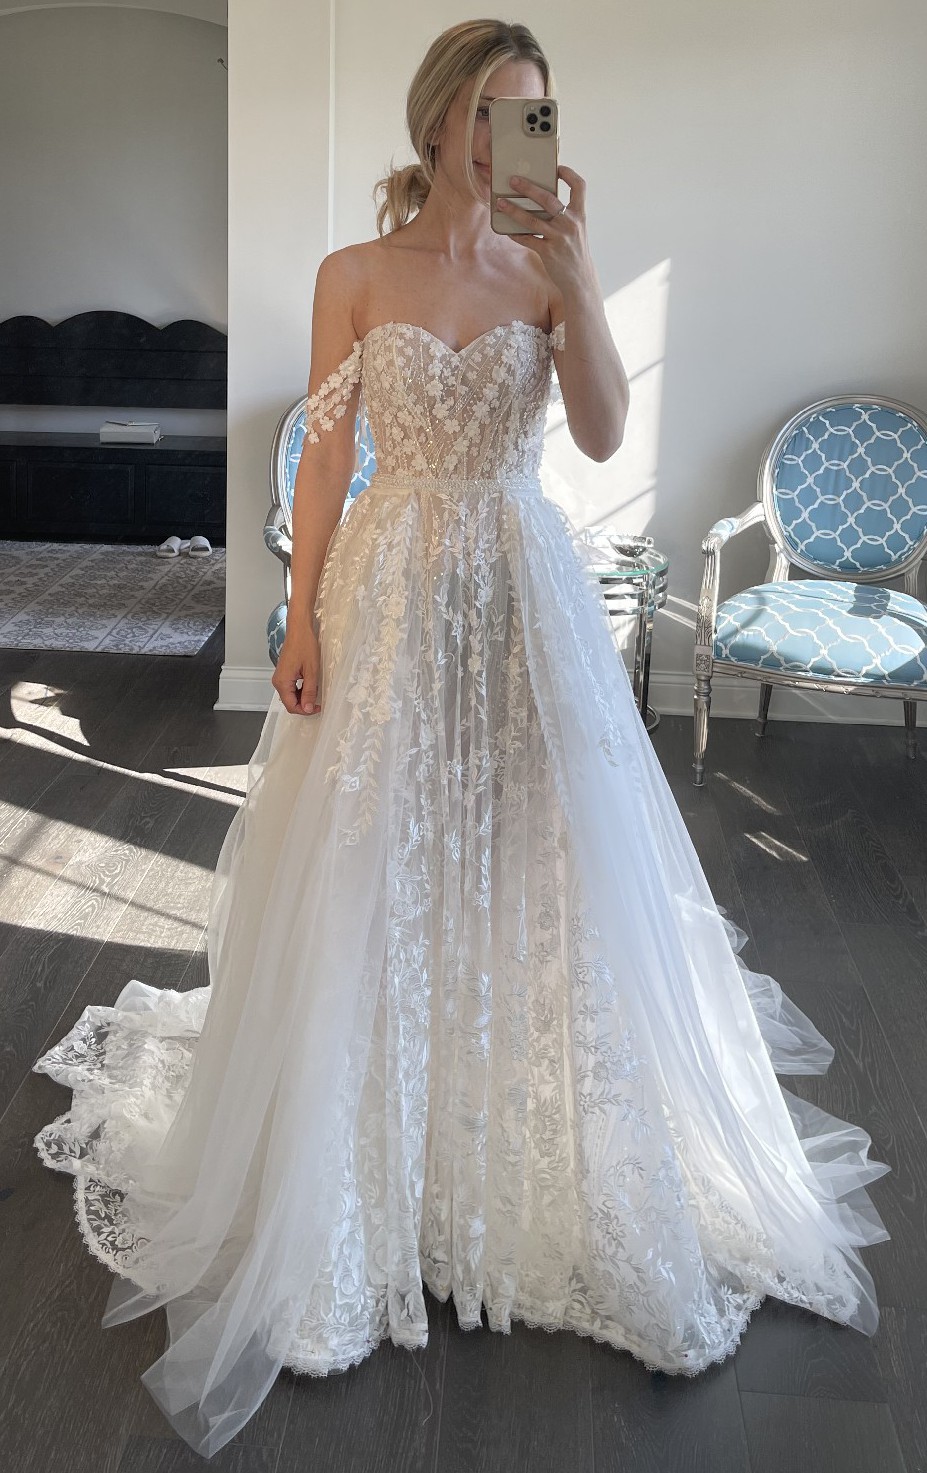 Dany Tabet Valencia Wedding Dress Save 63% - Stillwhite